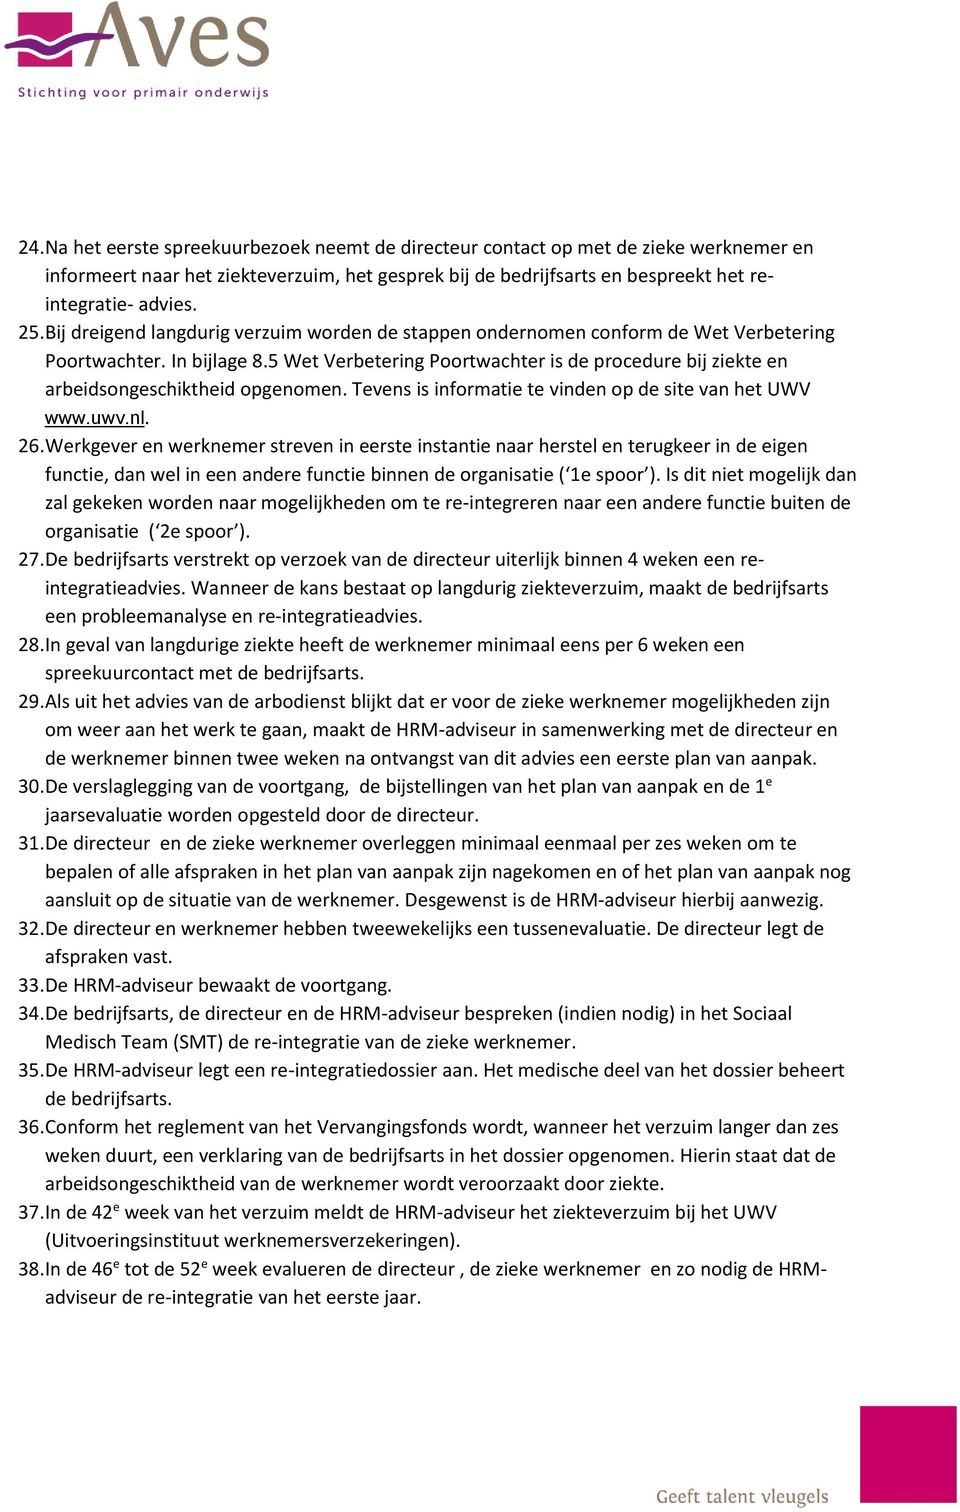 5 Wet Verbetering Poortwachter is de procedure bij ziekte en arbeidsongeschiktheid opgenomen. Tevens is informatie te vinden op de site van het UWV www.uwv.nl. 26.